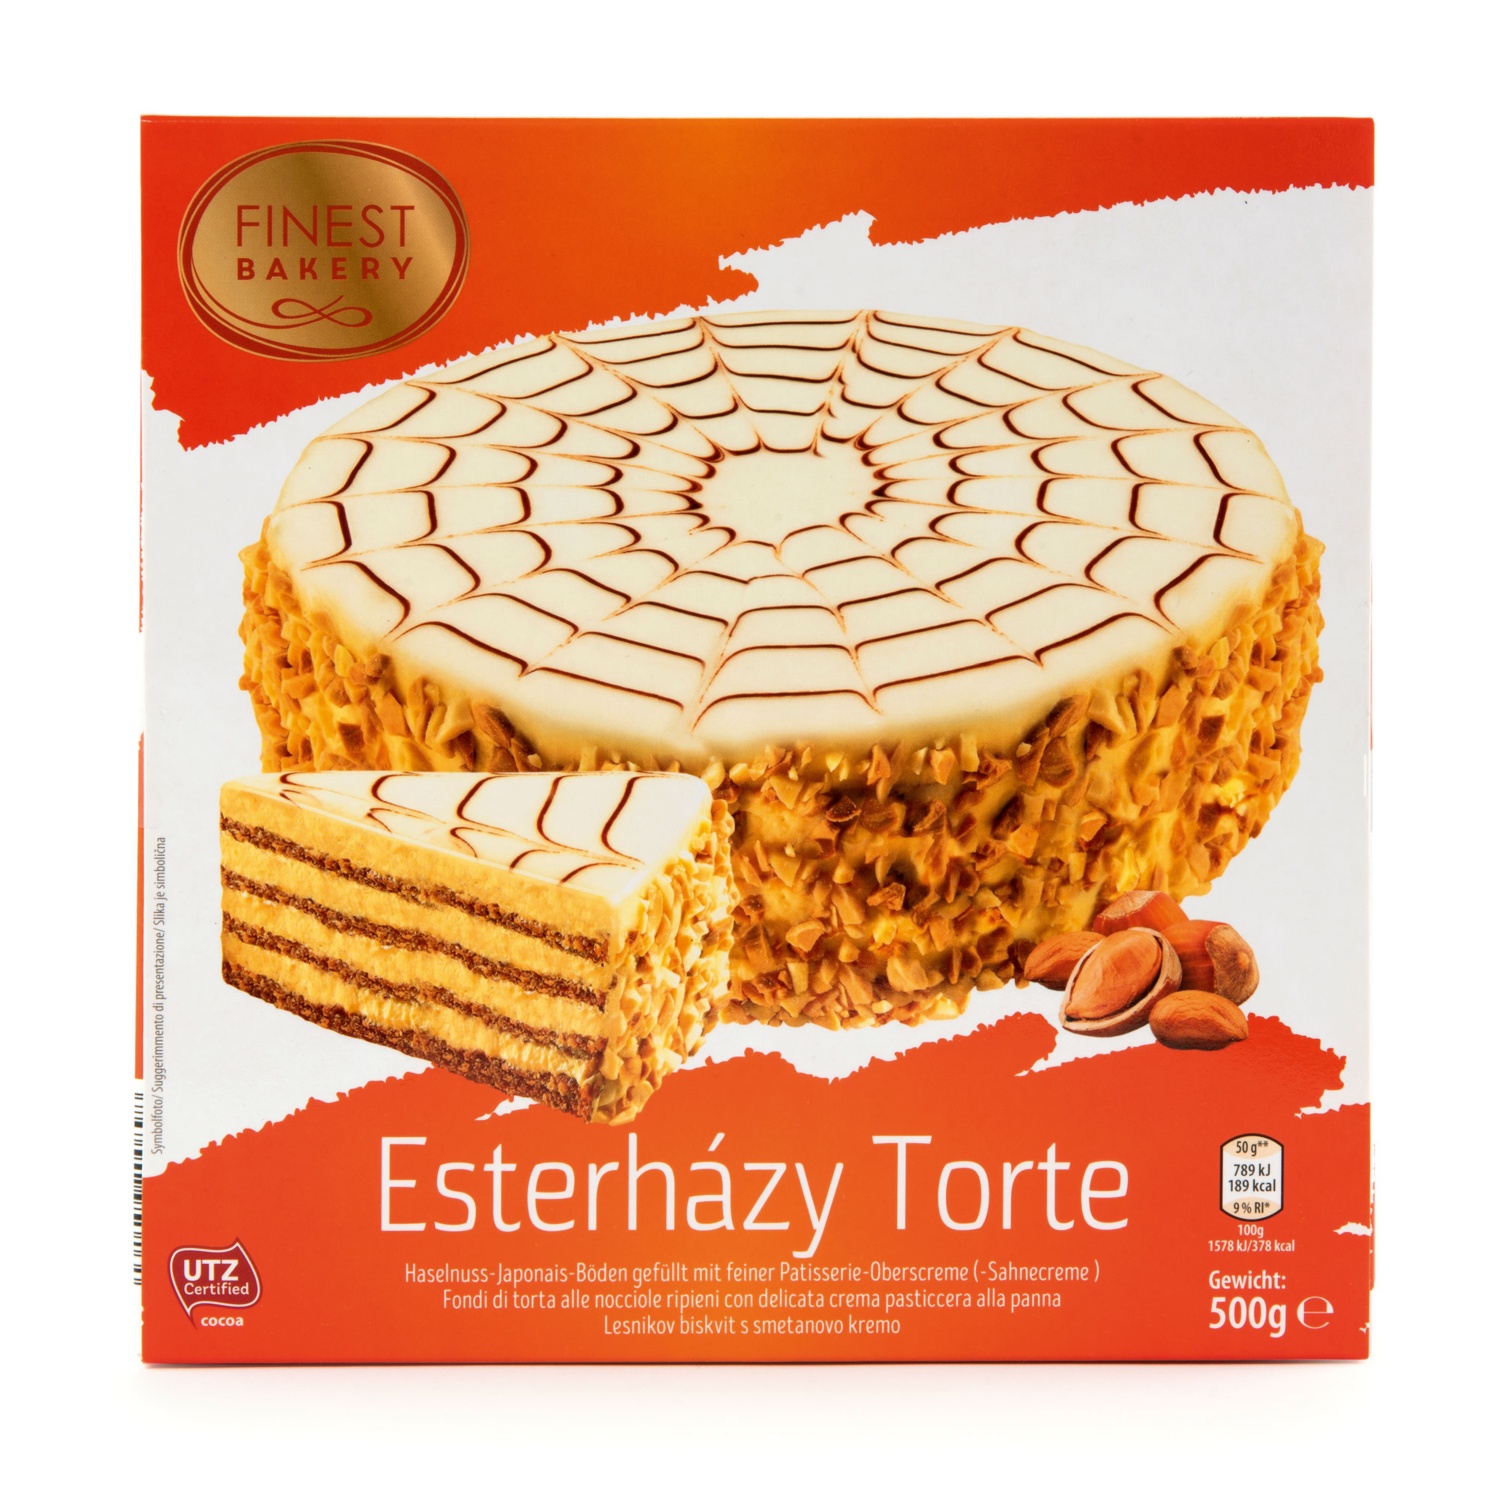 FINEST BAKERY Torte, Esterházy Torte